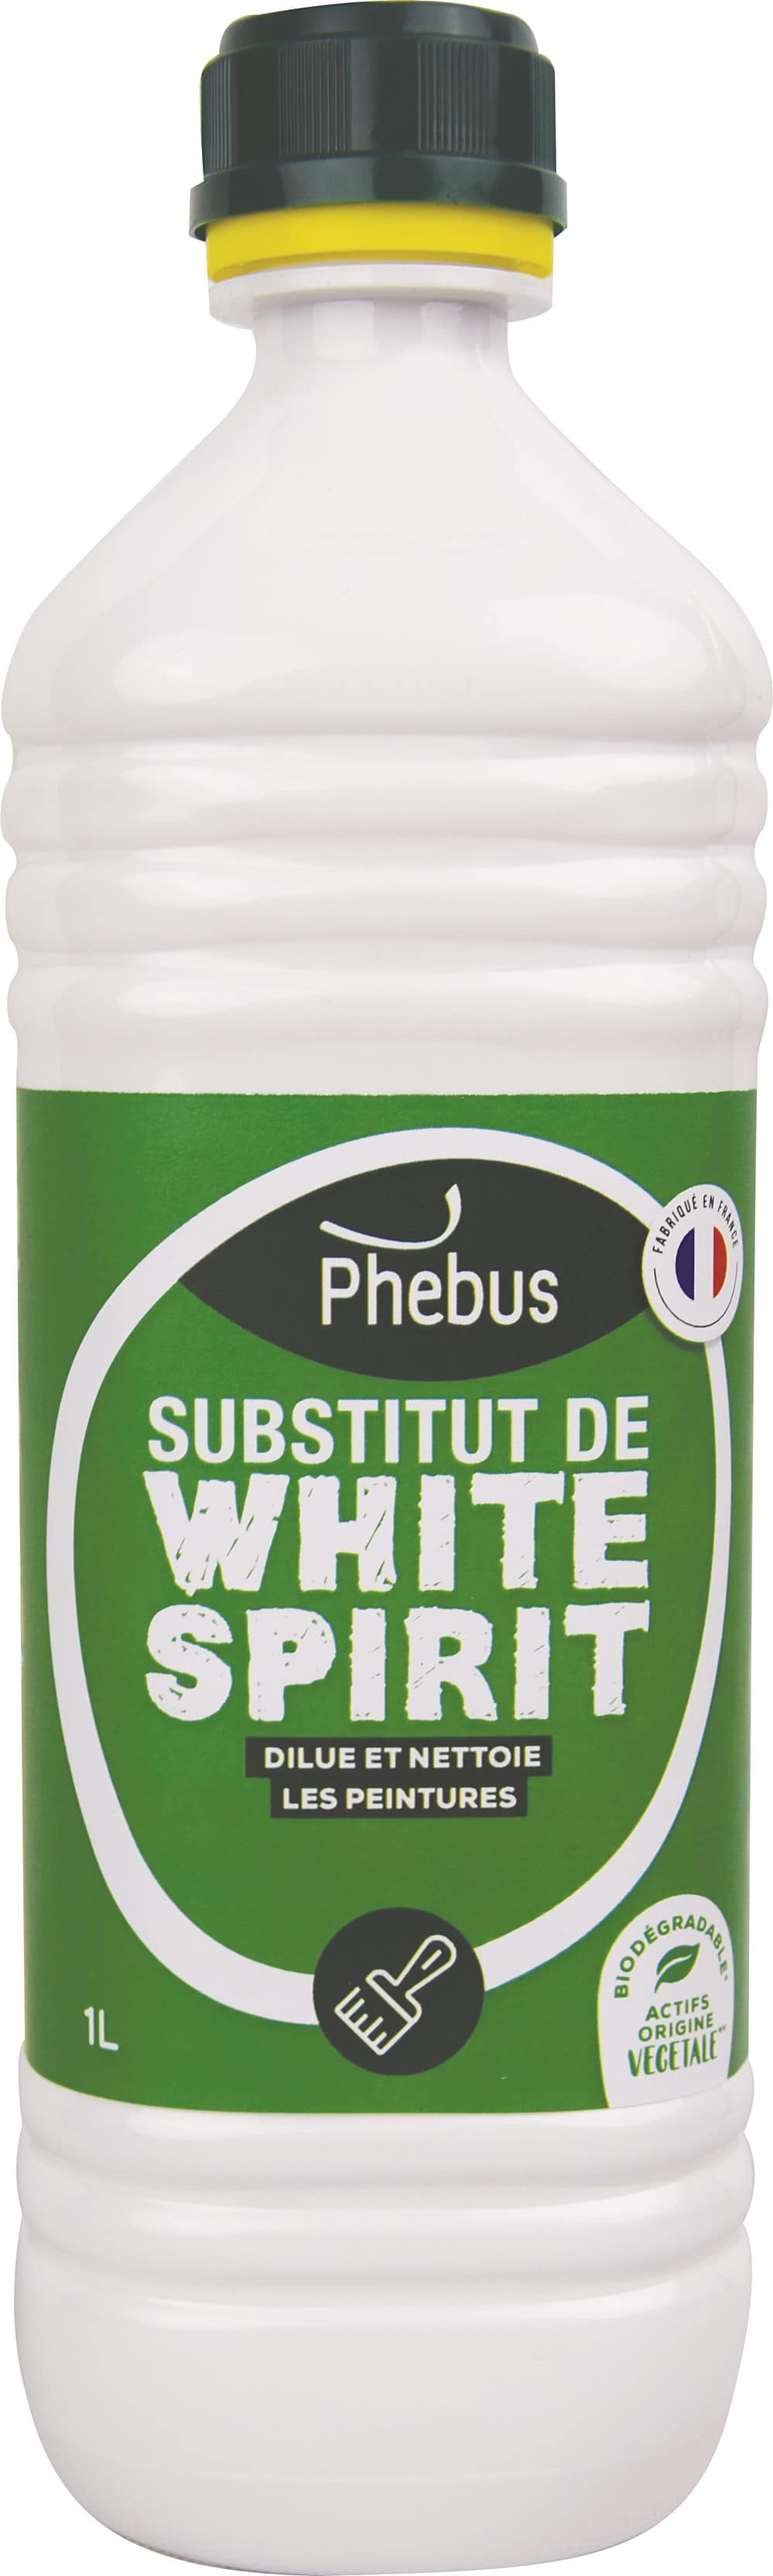 Substitut de white spirit